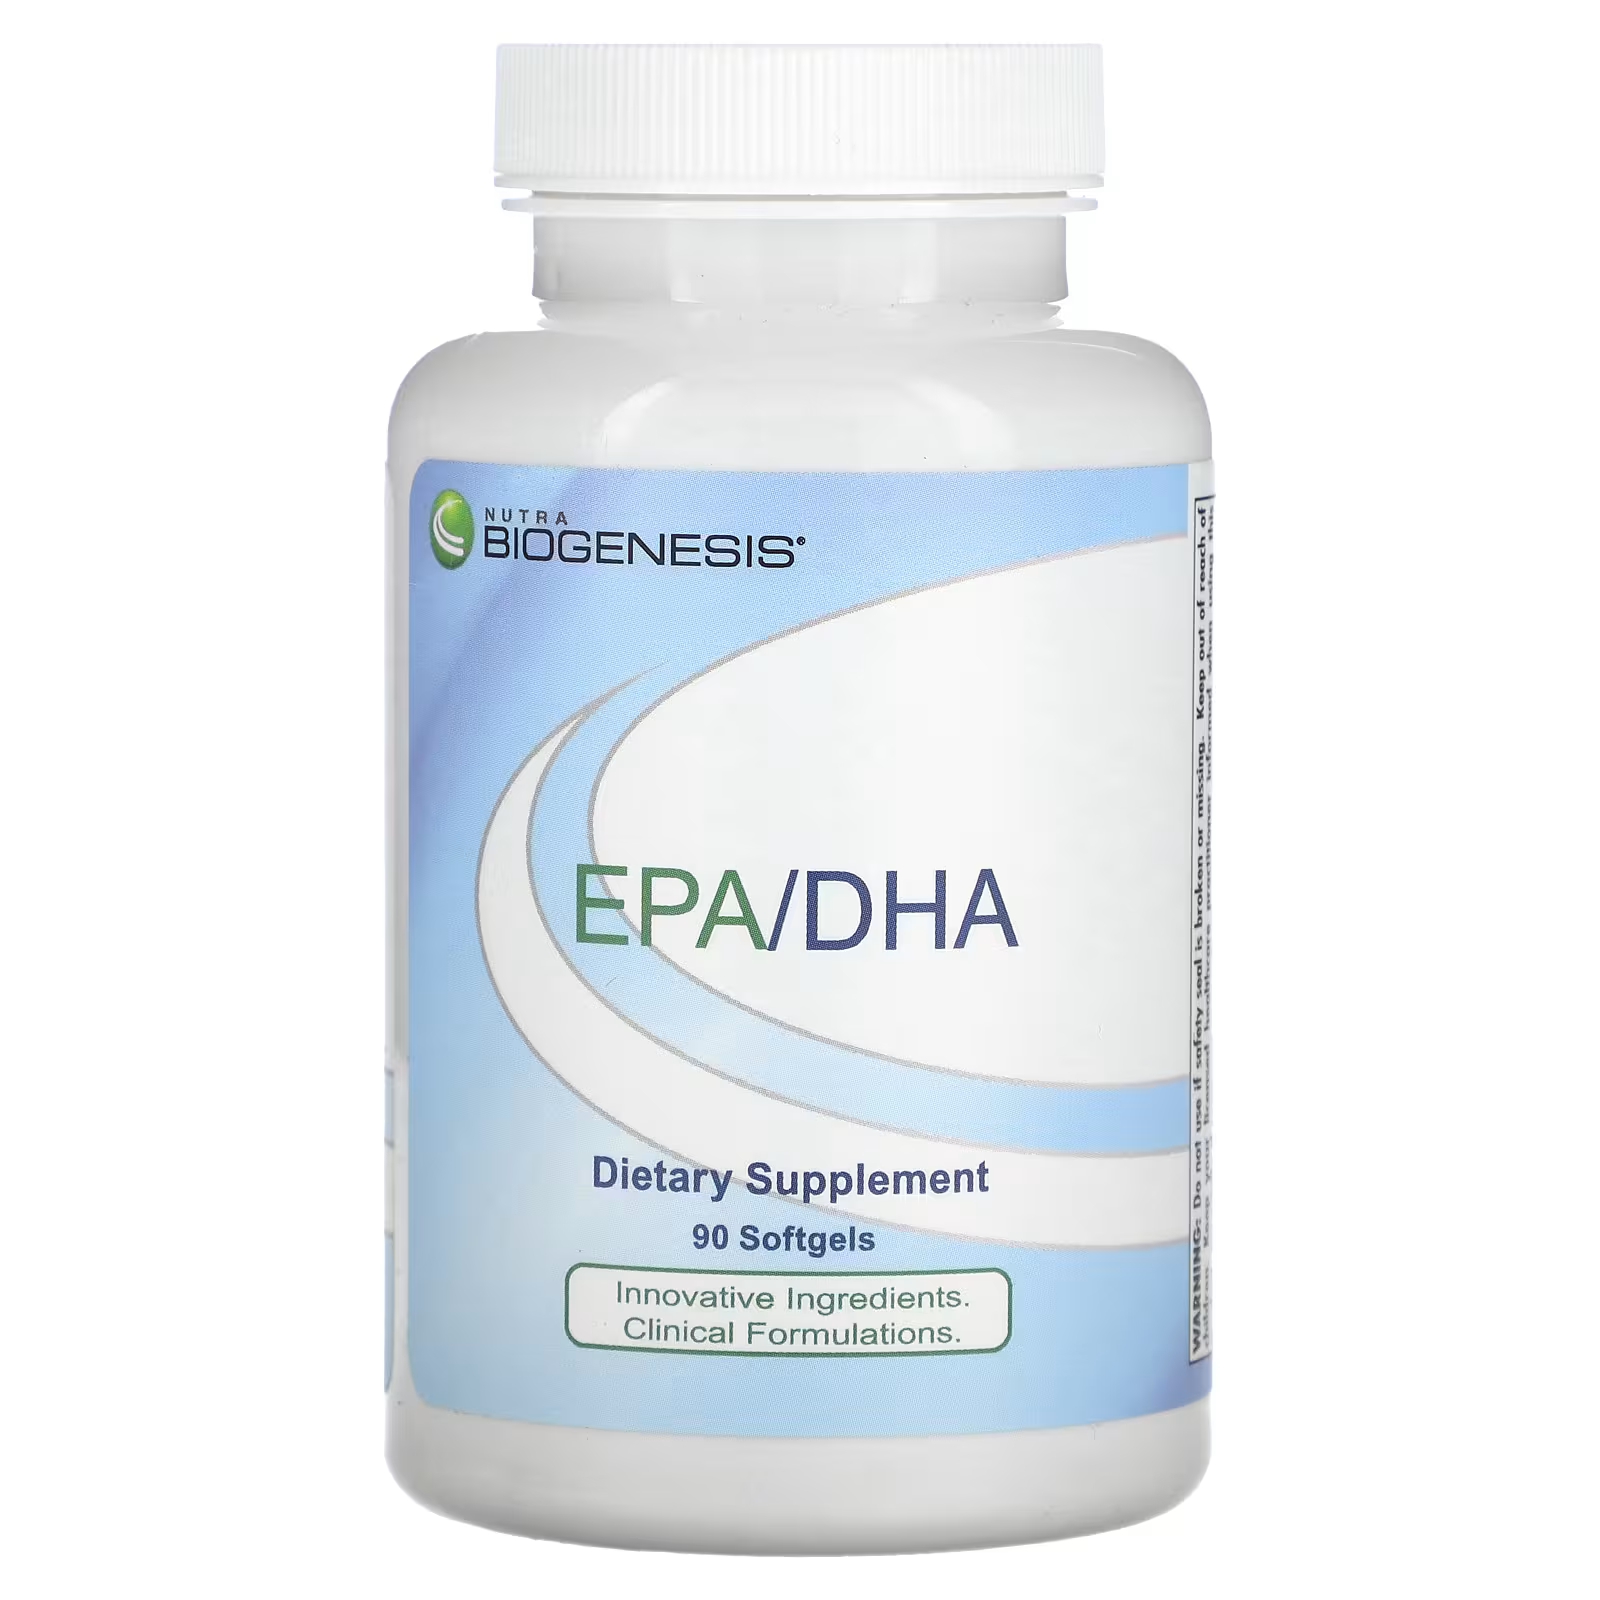 Пищевая добавка Nutra BioGenesis EPA/DHA, 90 мягких таблеток комплекс bonalin epa dha 60 мягких таблеток soria natural